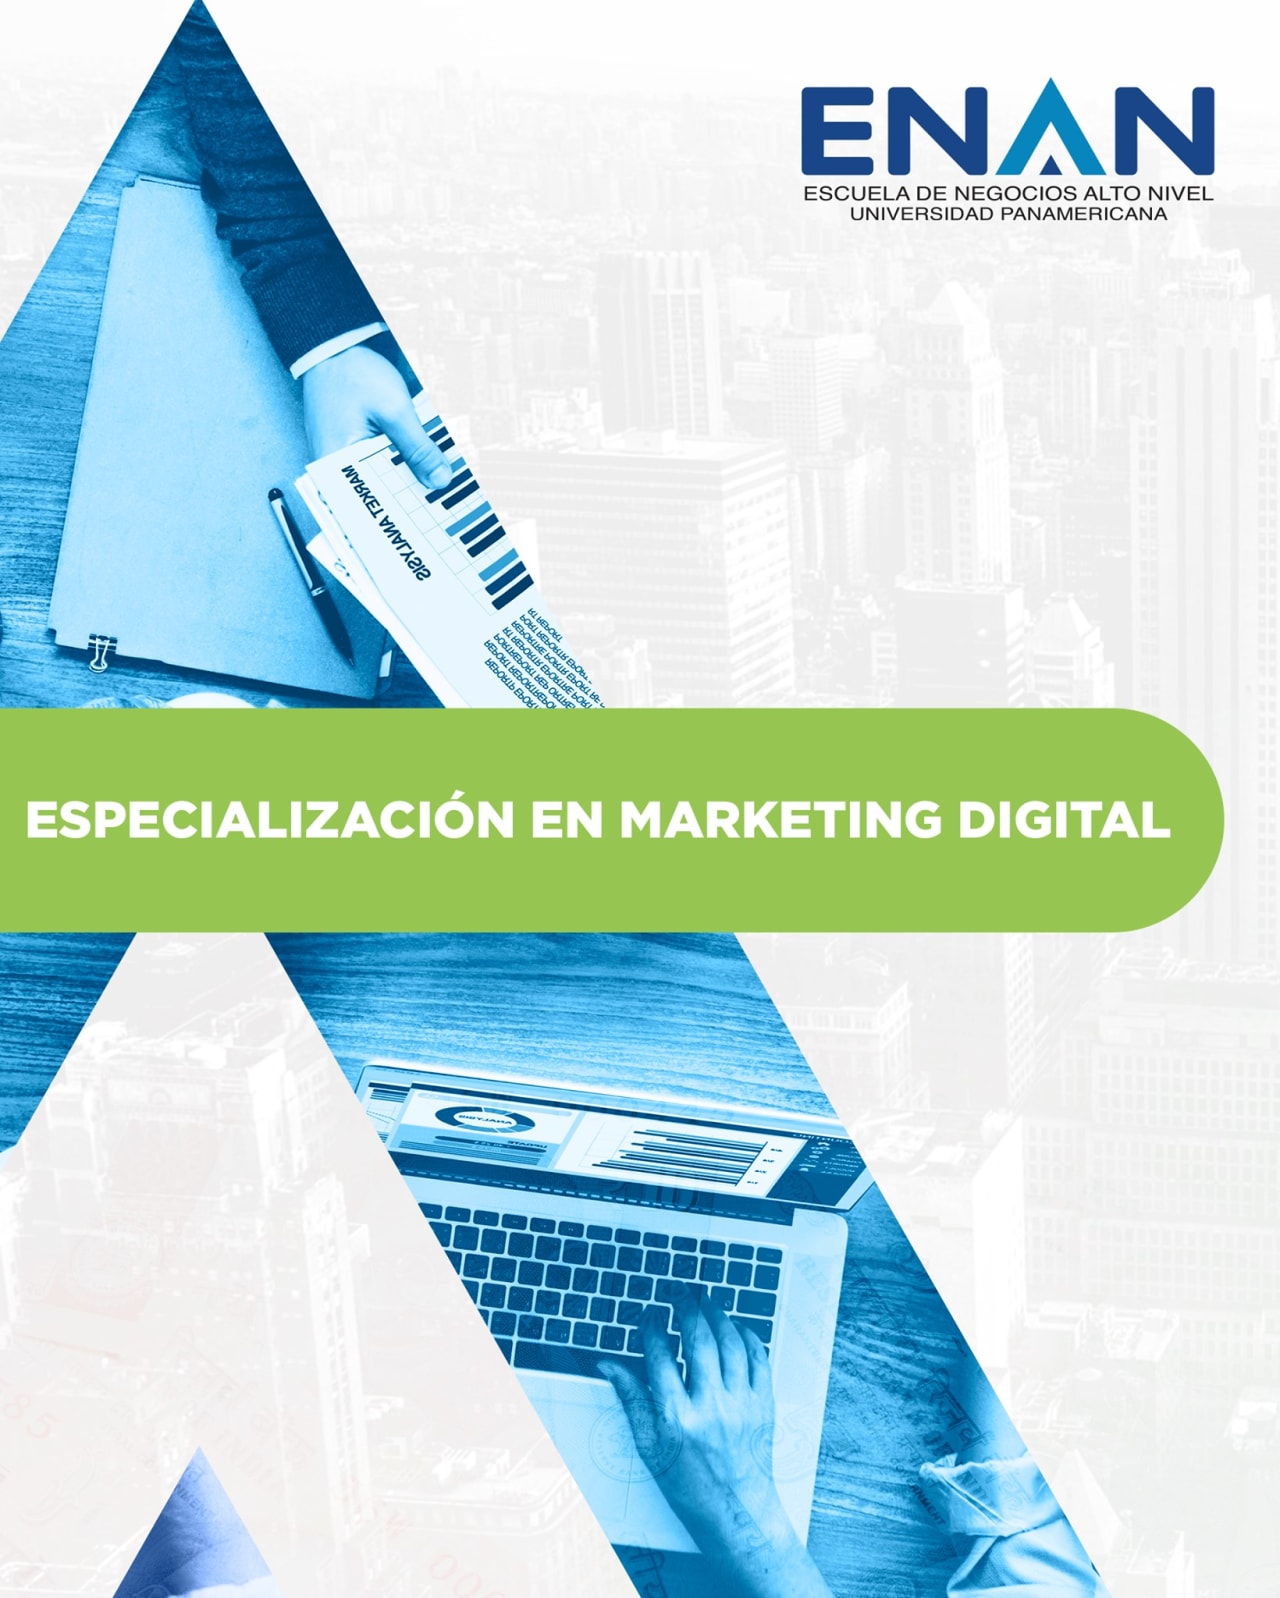 Escuela de Negocios Alto Nivel - Universidad Panamericana de Guatemala Specialisatie in digitale marketing